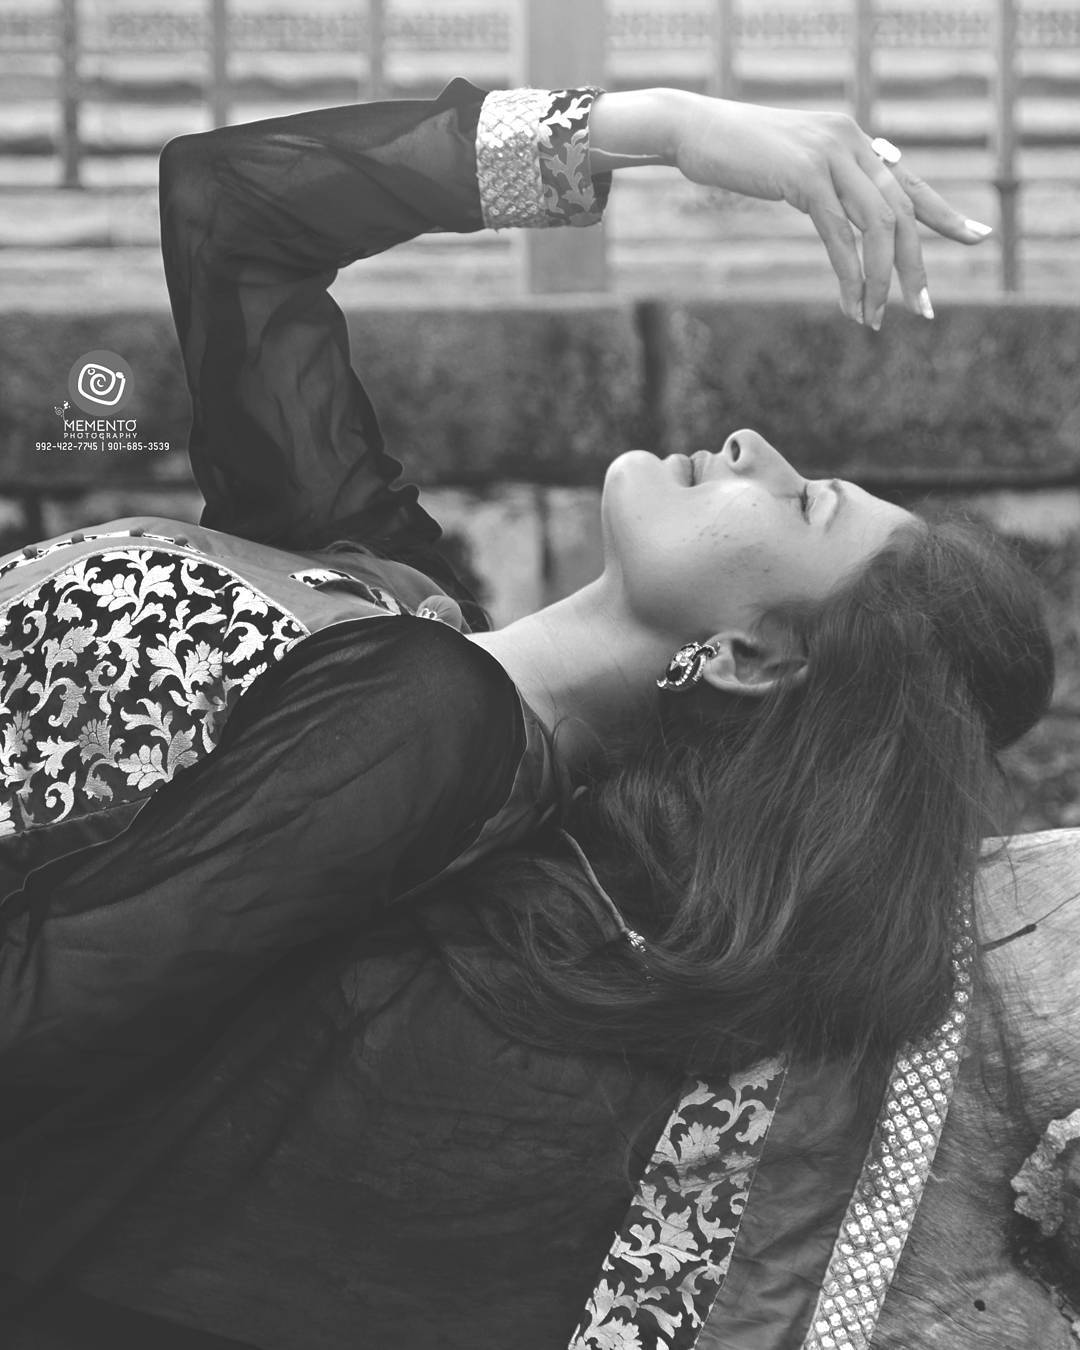 Outdoor Portfolio/catalog shoot / modeling portrait .  #portfolioshoot #womensportrait #catalogshoot #ahmedabadfashion #ahmedabadfashionblogger
 #ahmedabadfashionpalette #printshoot #womensportraiture #beautifulwomen #girlsportrait #photoholic #portfolioshoot  #folioshoot  #girlsfashions  #portraitphotography #portrait
#fashionphotography #FashionShoot #ahmedabad #photography #picoftheday
#modelpose #modelphotography #AhmedabadPhotography
#shootout_ahmedabad #indianfashionblogger #fashionblogger  #ahmedabaddiaries #ahmedabadshoutout #MementoPhotography